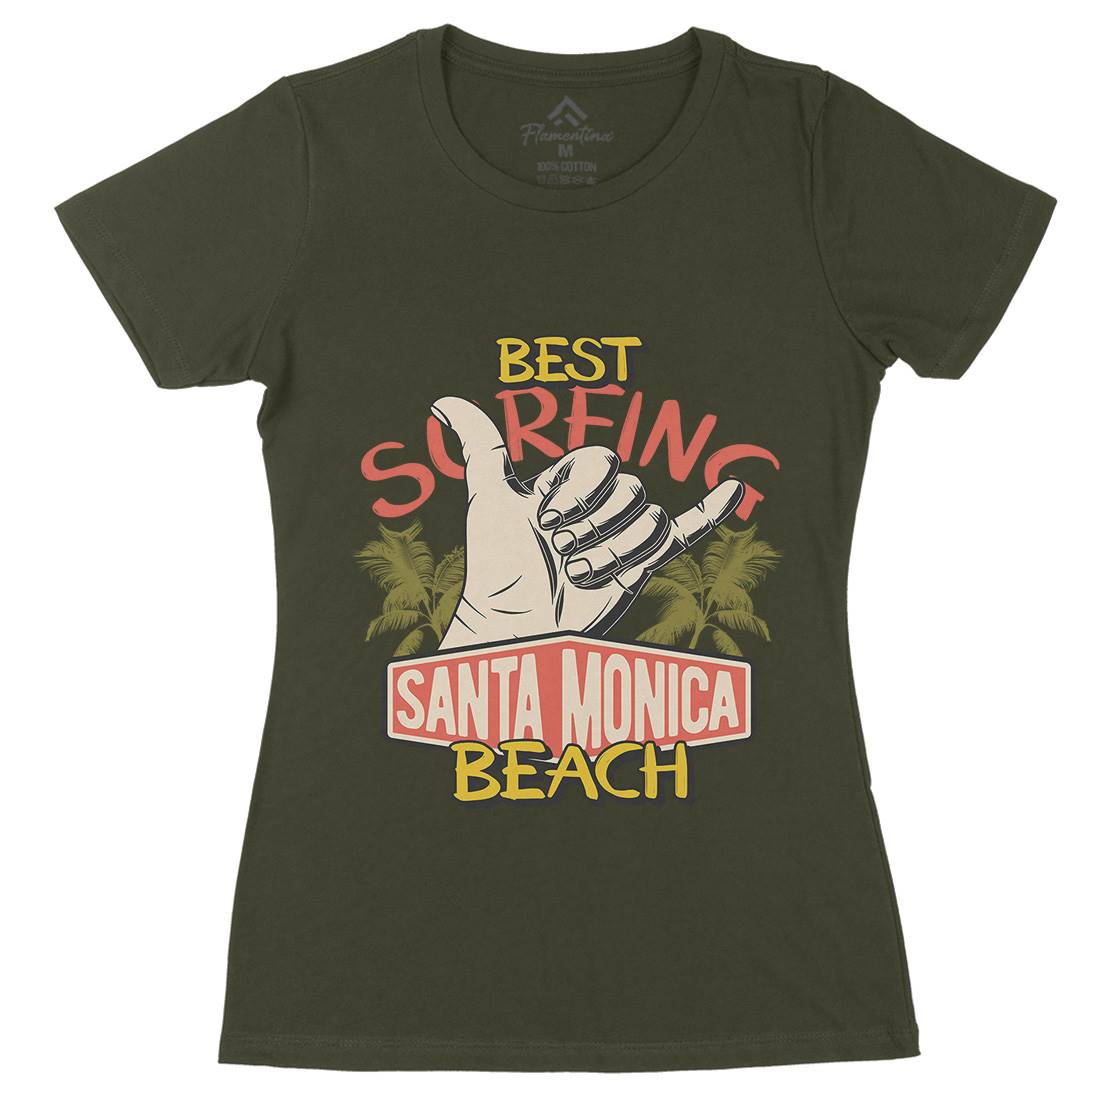 Best Surfing Beach Womens Organic Crew Neck T-Shirt Surf D909